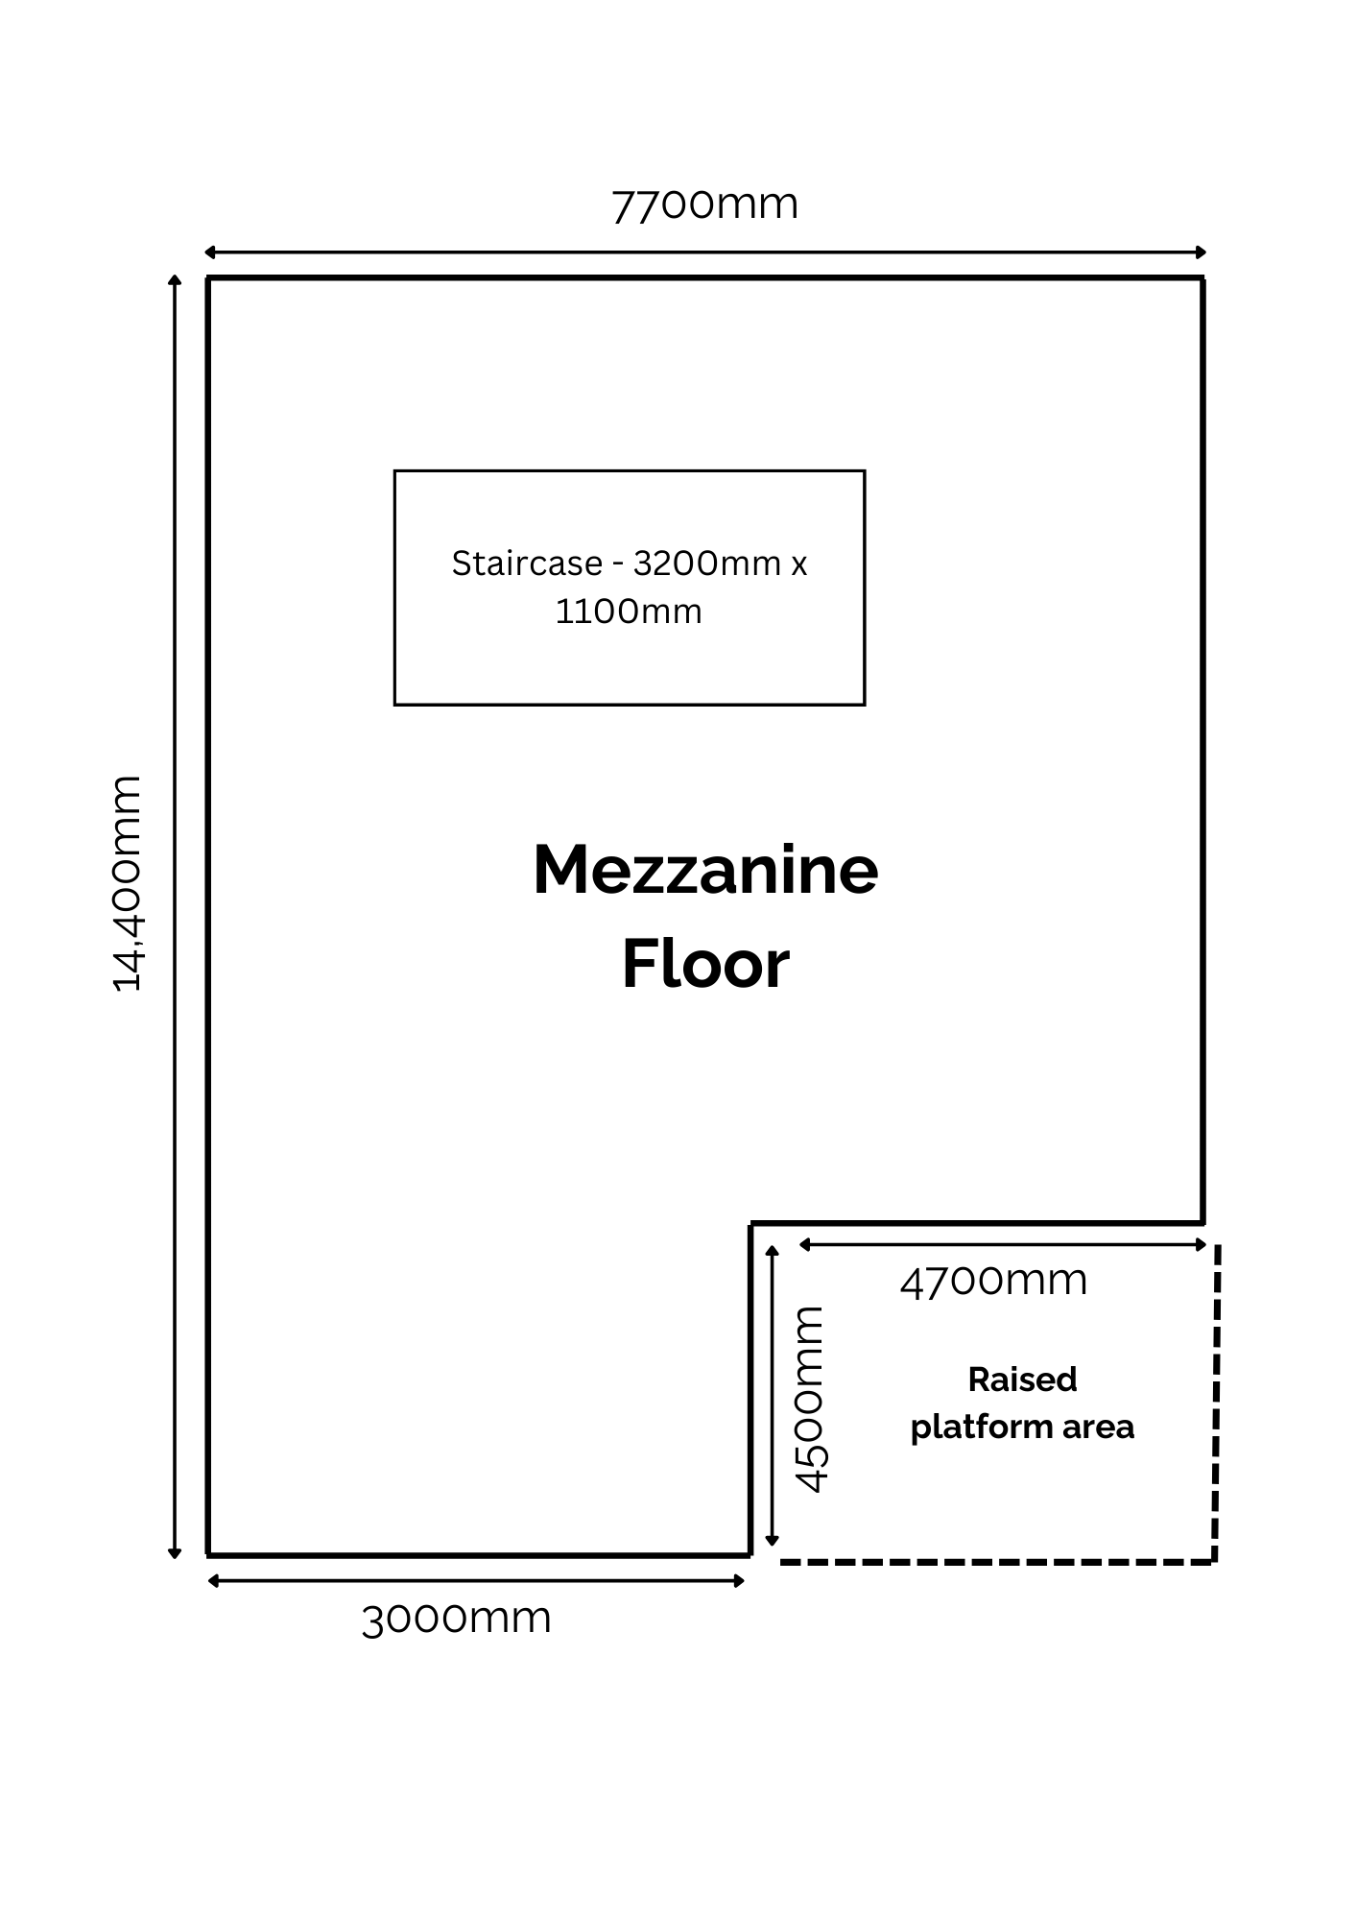 Mezzanine Floor, total floor area 14,400mm x 7700m - Bild 10 aus 10